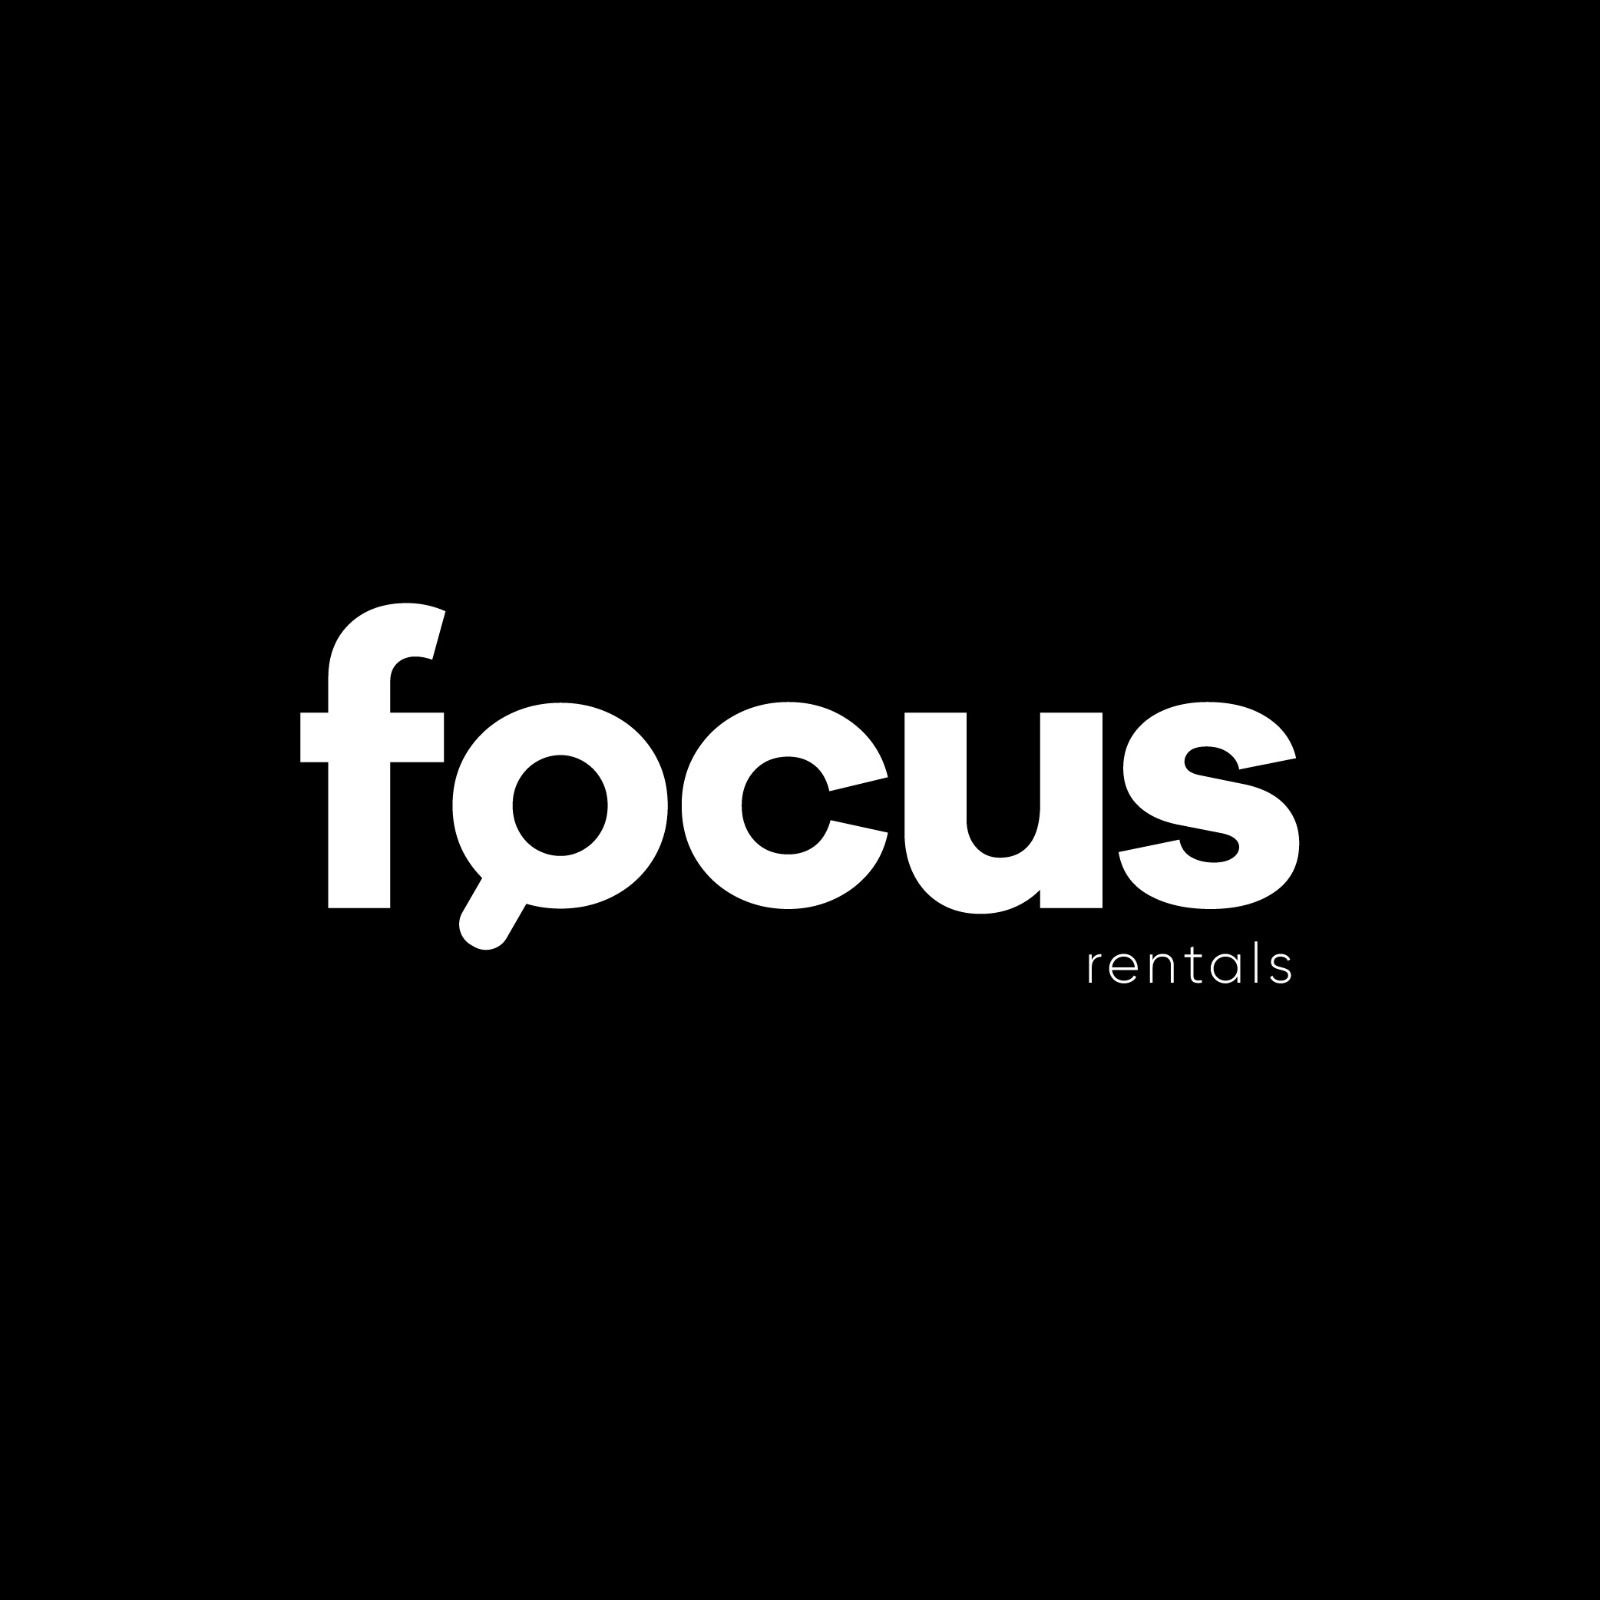 Focus Rentals